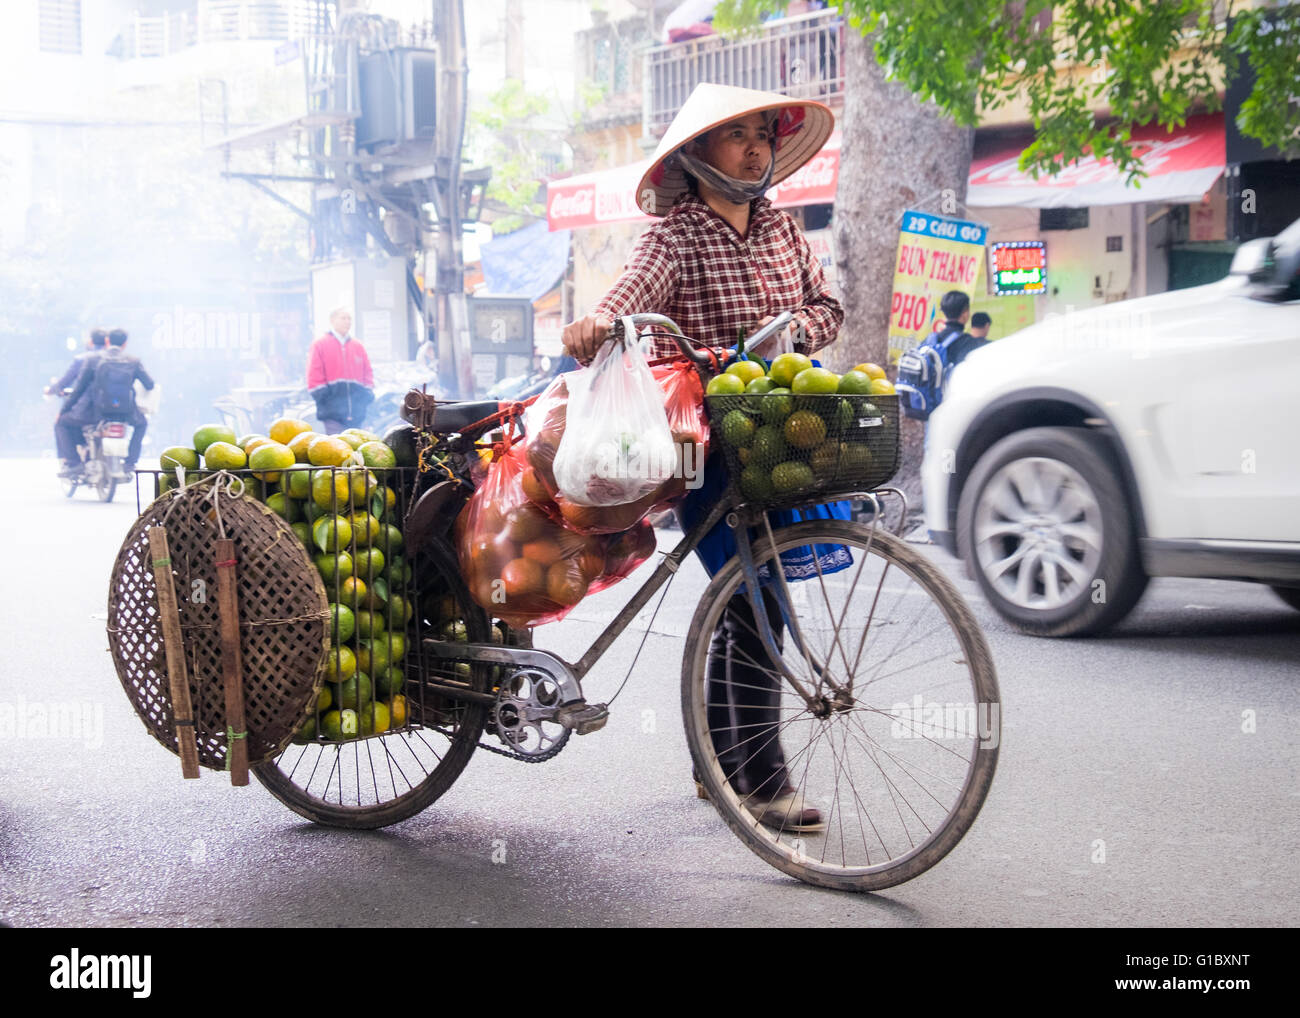 Un vendedor ambulante vendiendo naranjas en el barrio antiguo de Hanoi, Vietnam Foto de stock